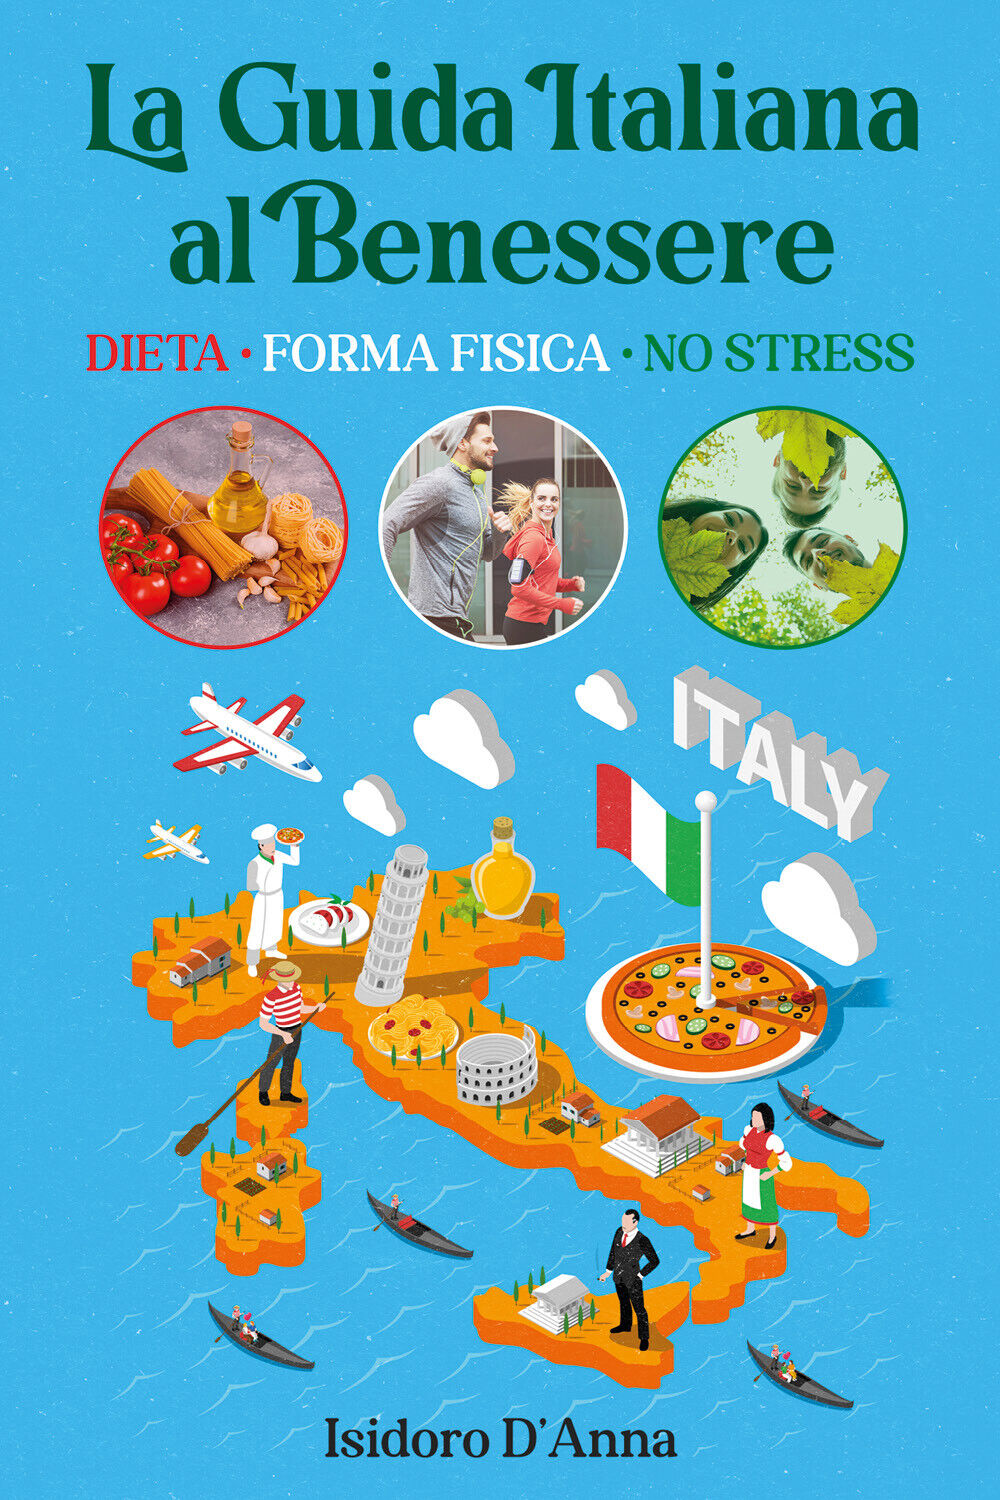 La Guida Italiana al Benessere. Dieta, Forma fisica, No stress di Isidoro d'Anna